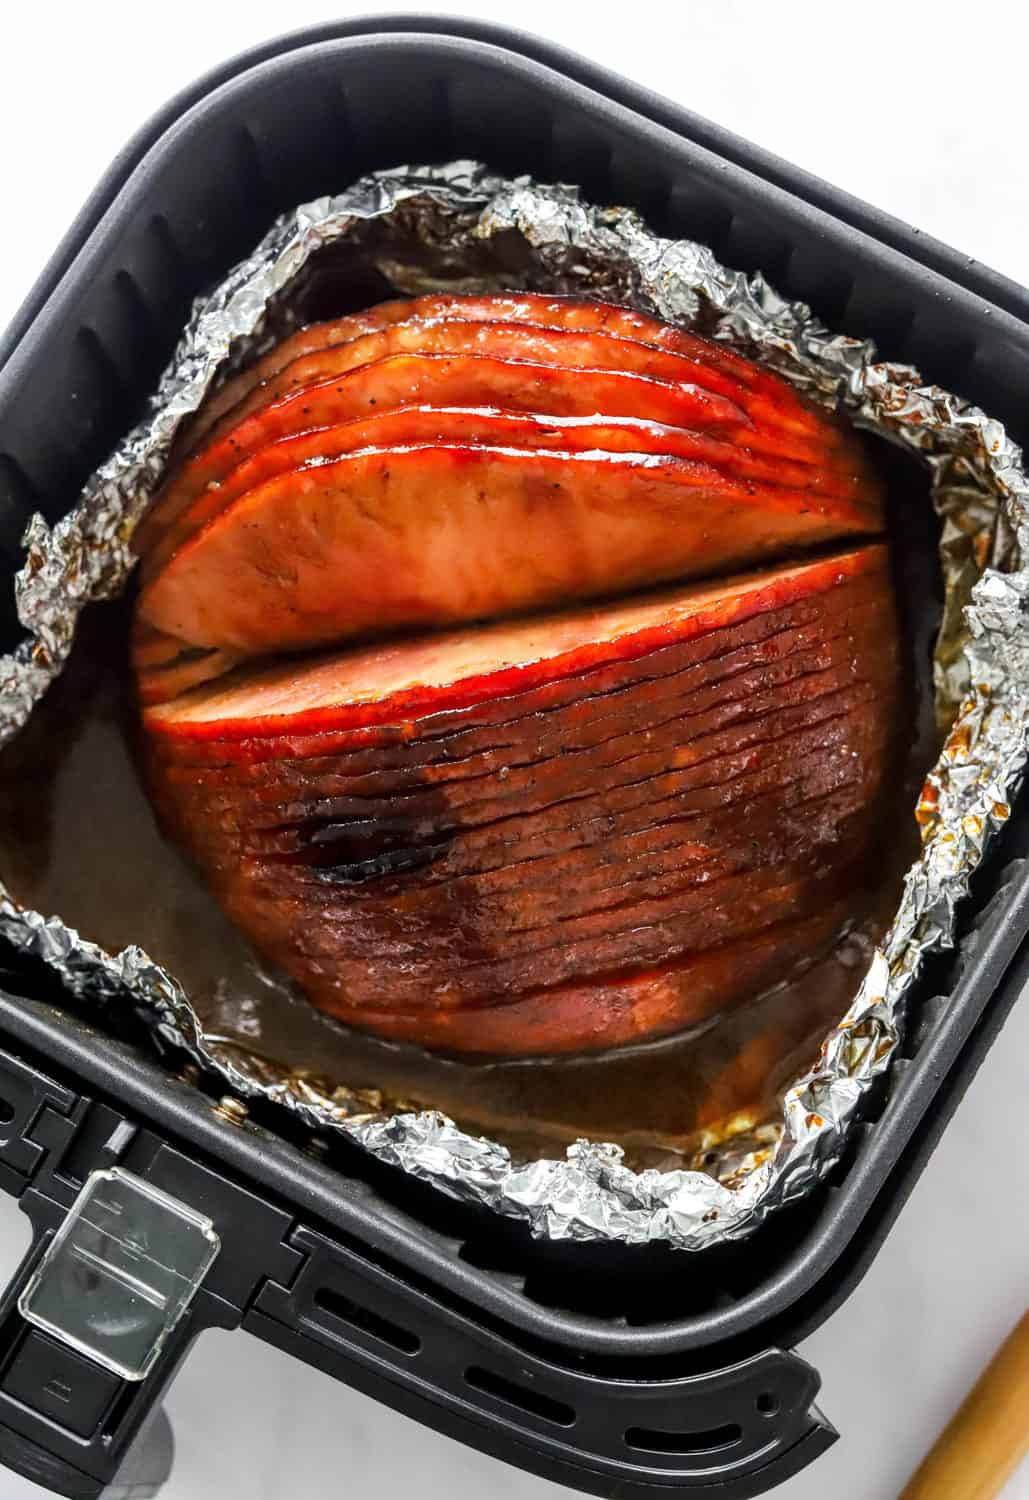 Cooked spiral ham in a foil basket inside a black air fryer basket, 